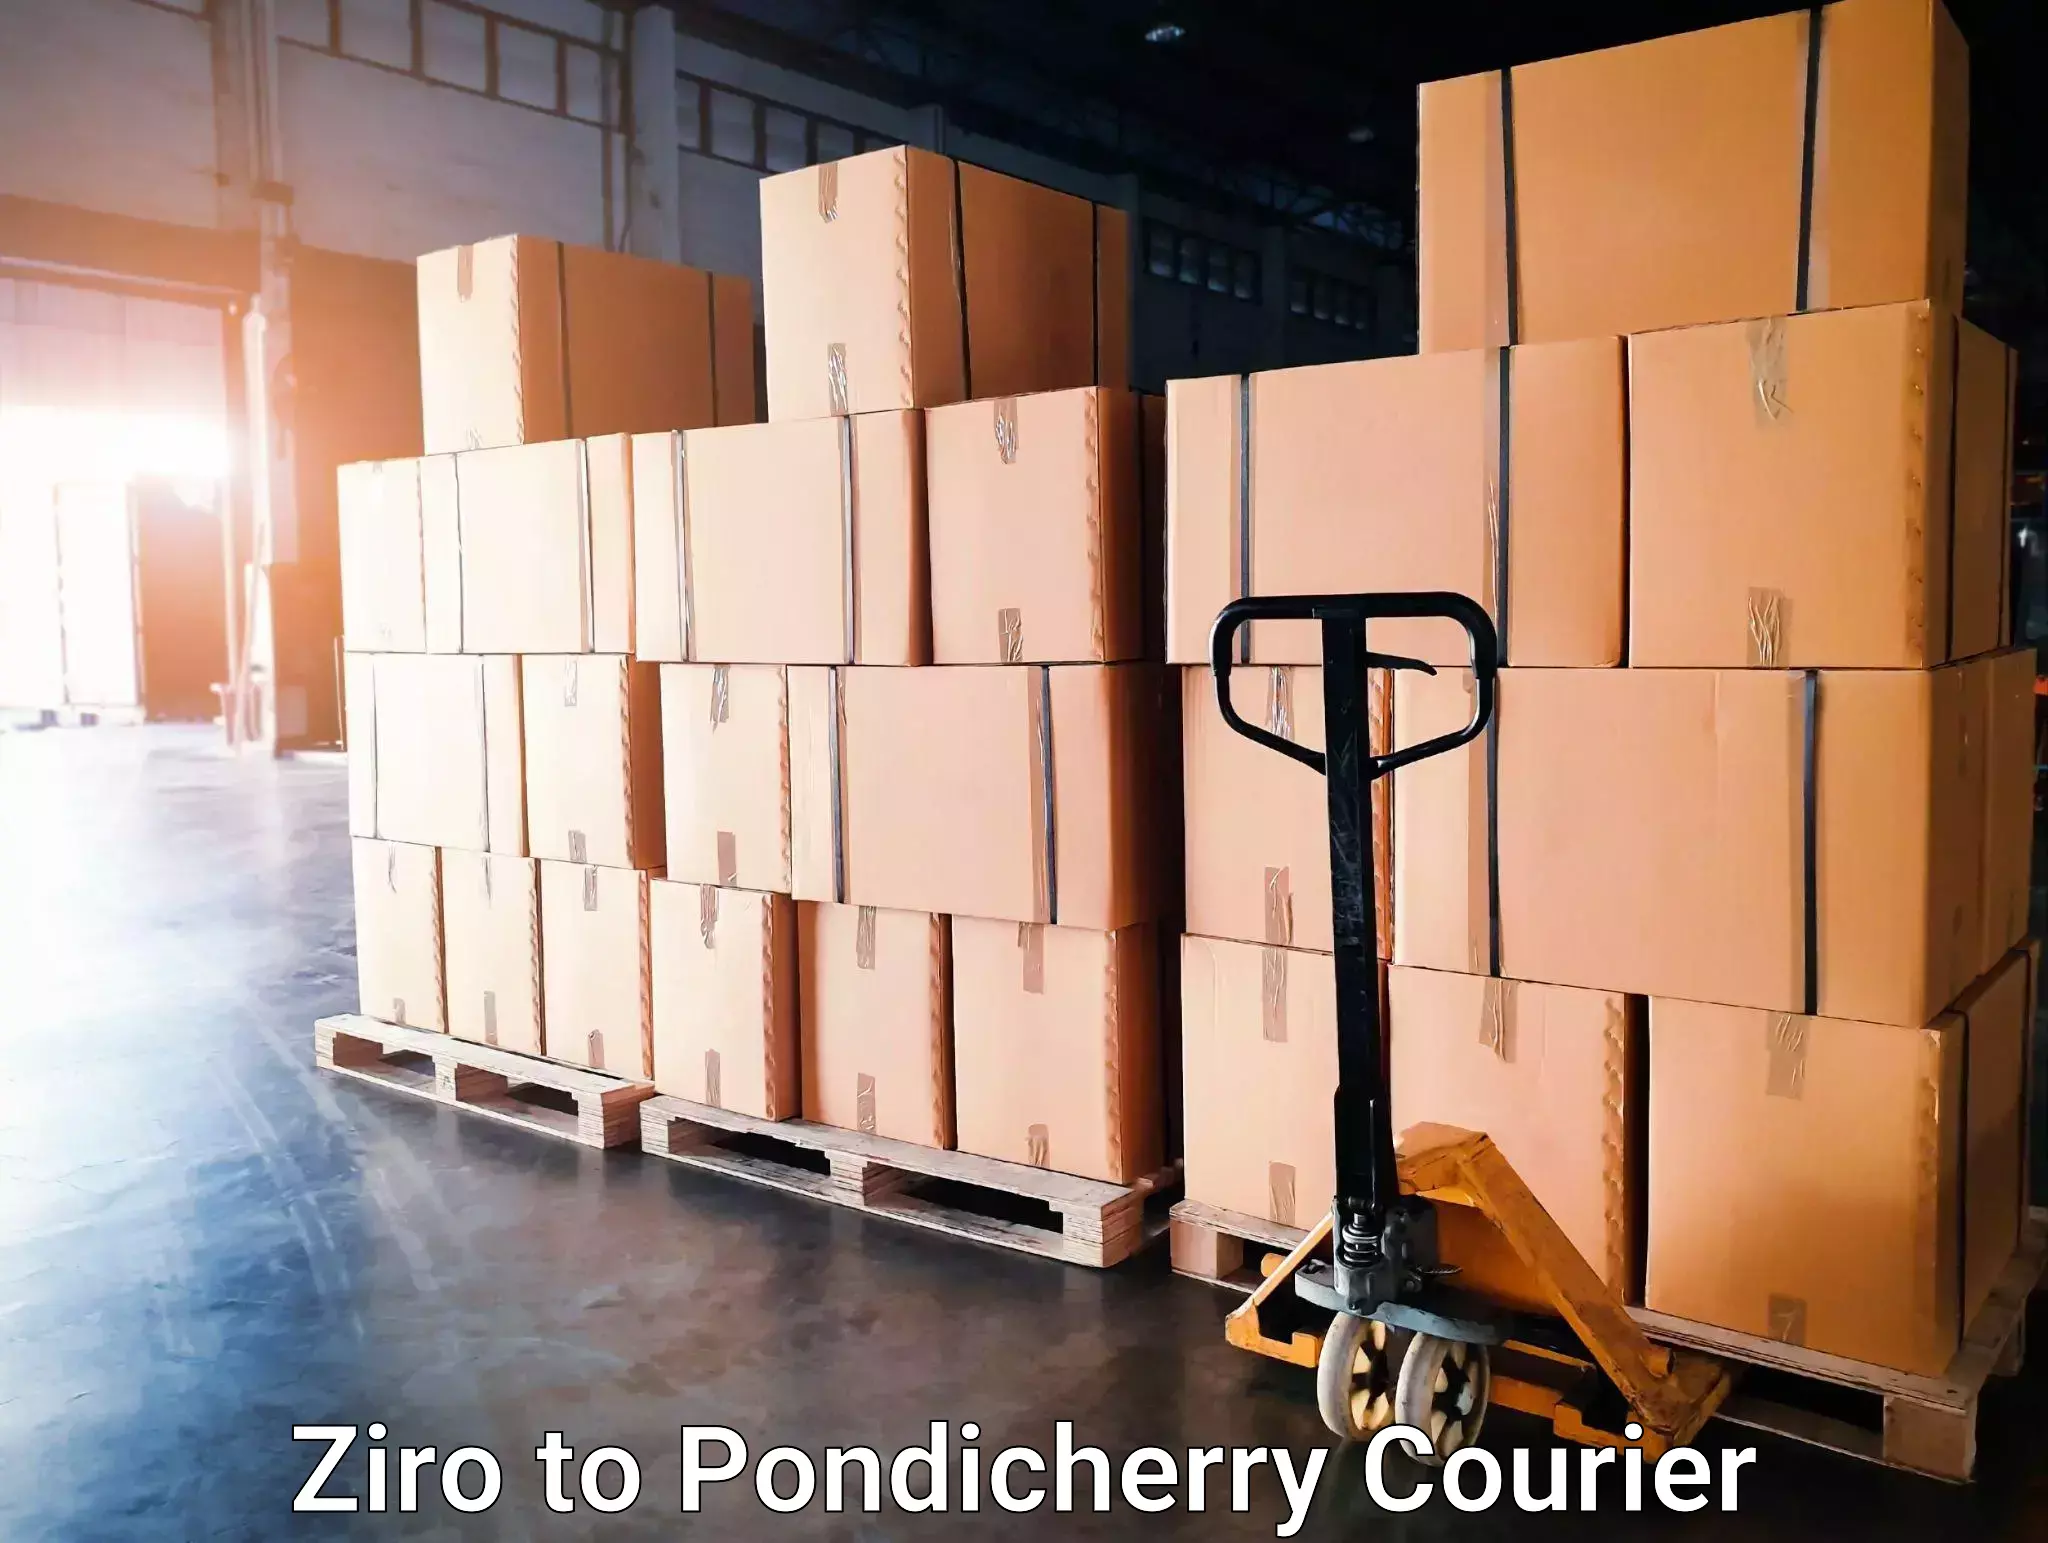 Customer-centric shipping in Ziro to Pondicherry University